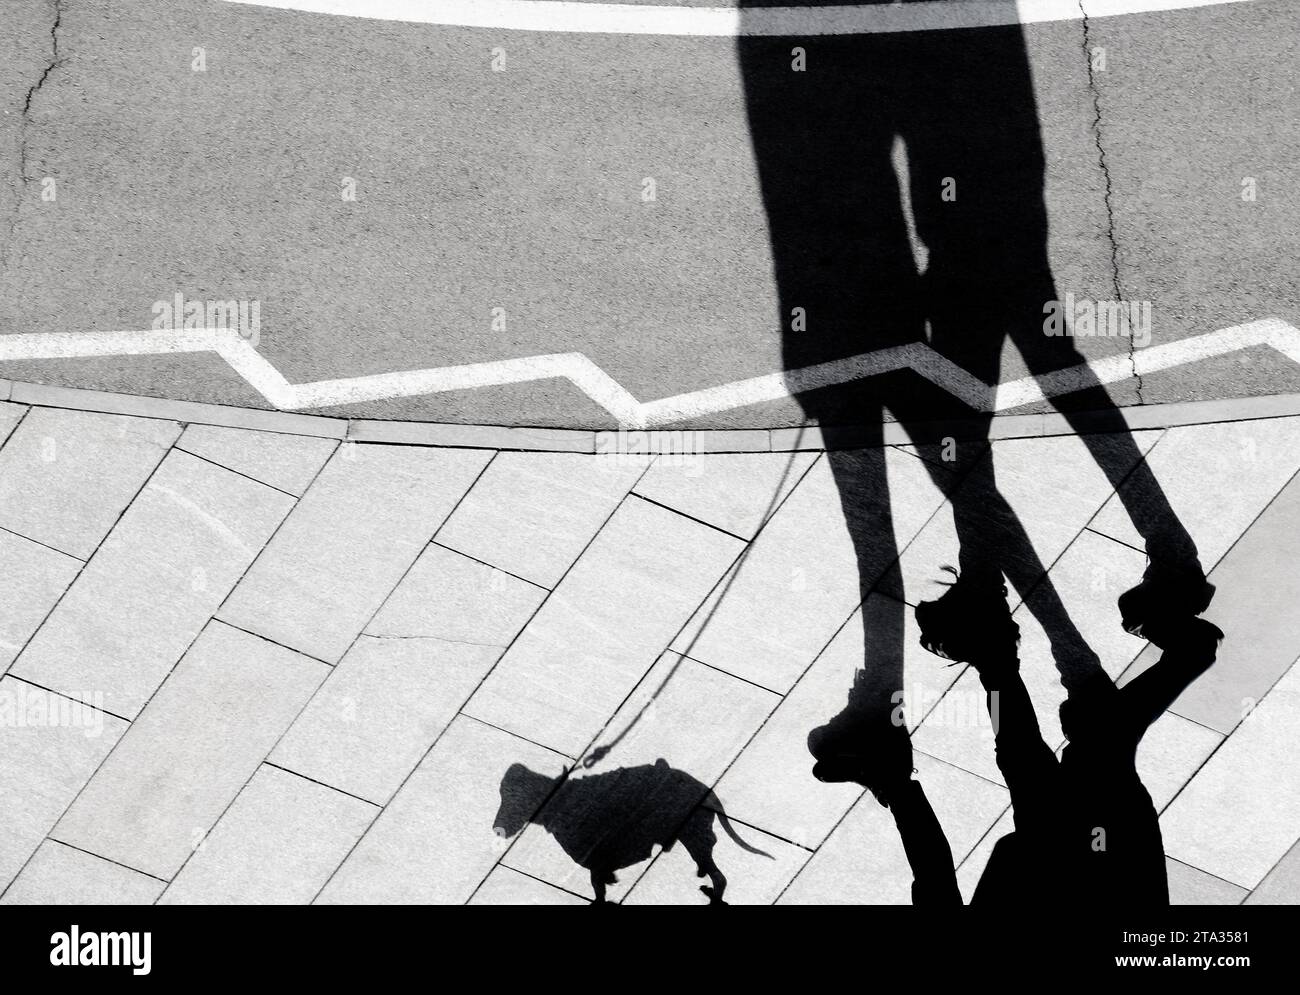 Silhouette d'ombre floue de deux personnes promenant un petit chien en laisse sur un trottoir près d'une piste cyclable Banque D'Images